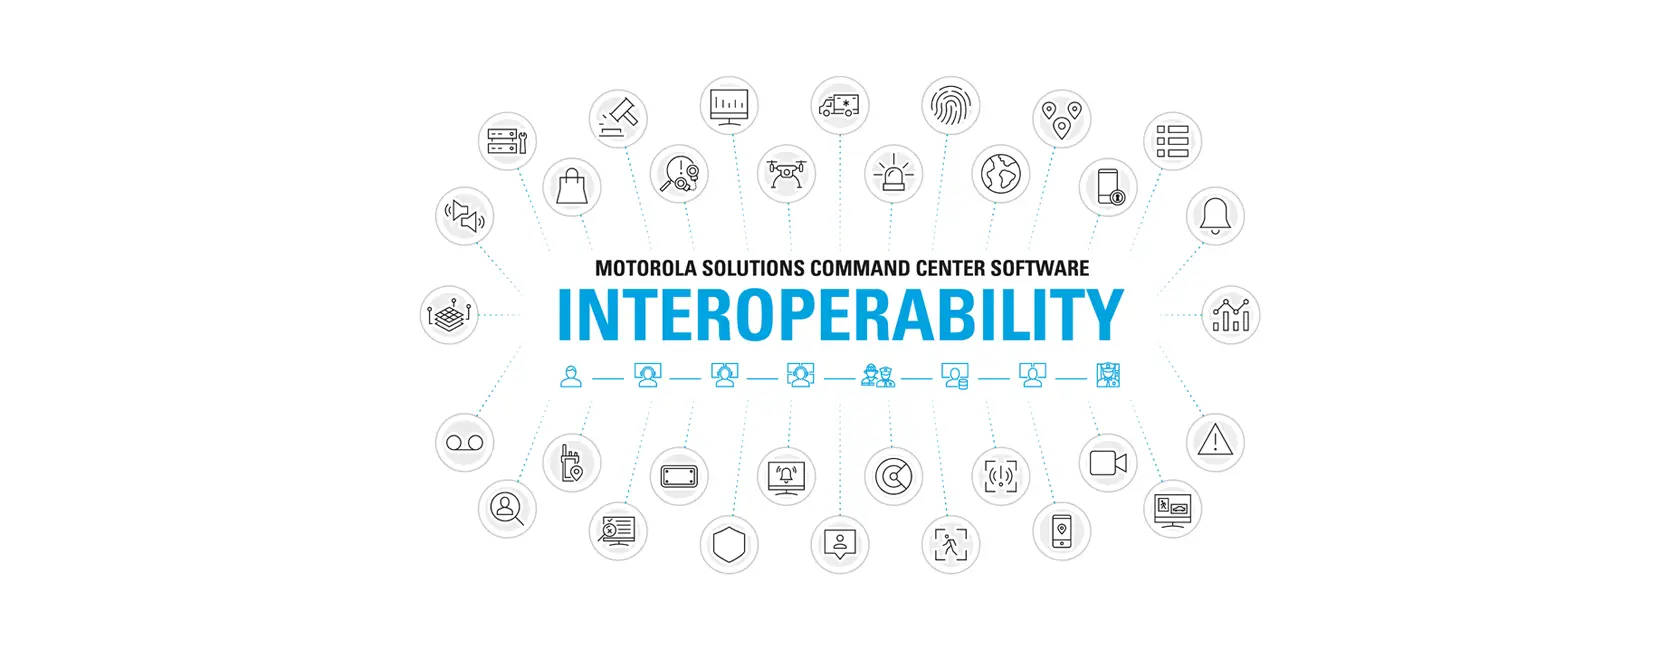 Command Center Interoperability Diagram Concept